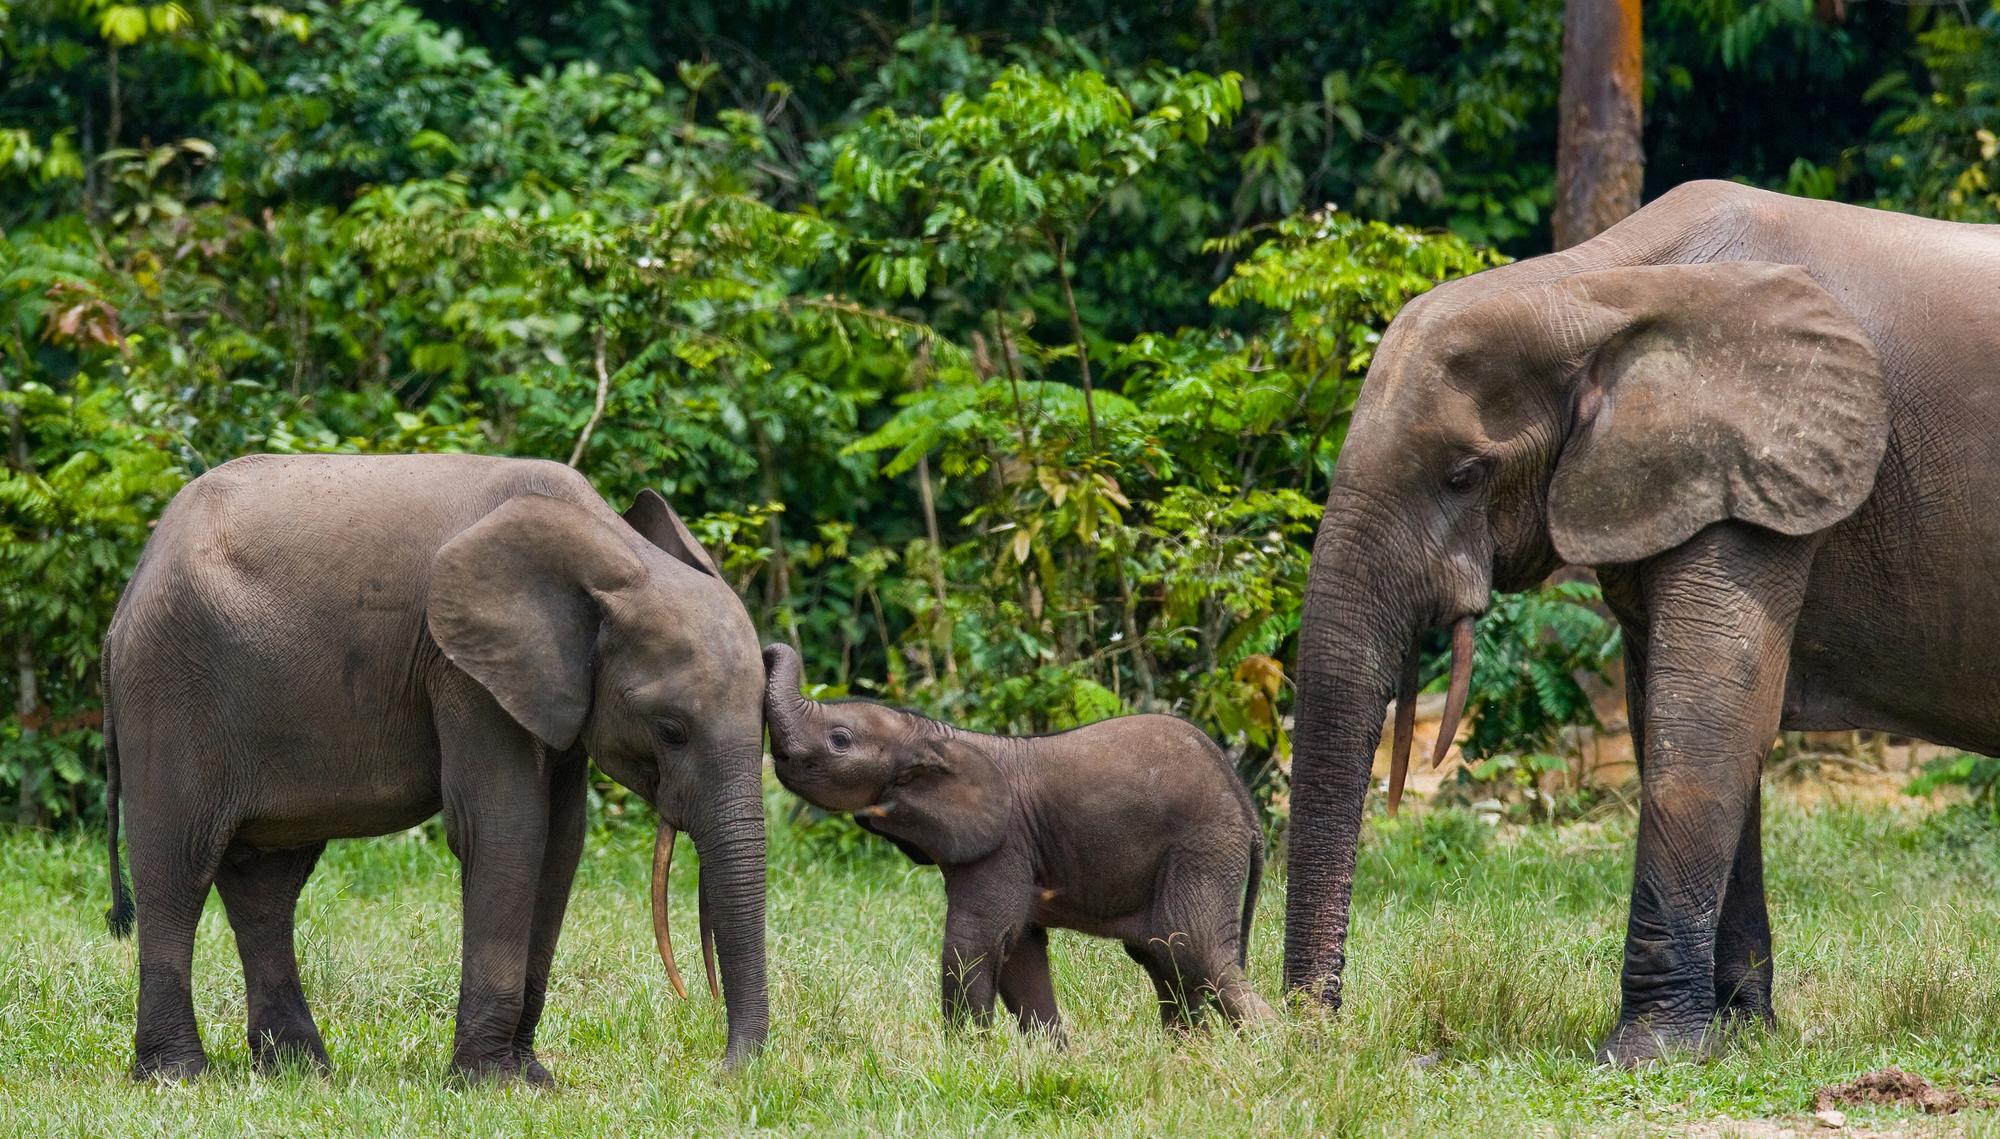 Les éléphants de la forêt du bassin du Congo en mangeant certaines graines et en piétinant la végétation favorisent le stockage de carbone. [Biosphoto via AFP - Andrey Gudkov]